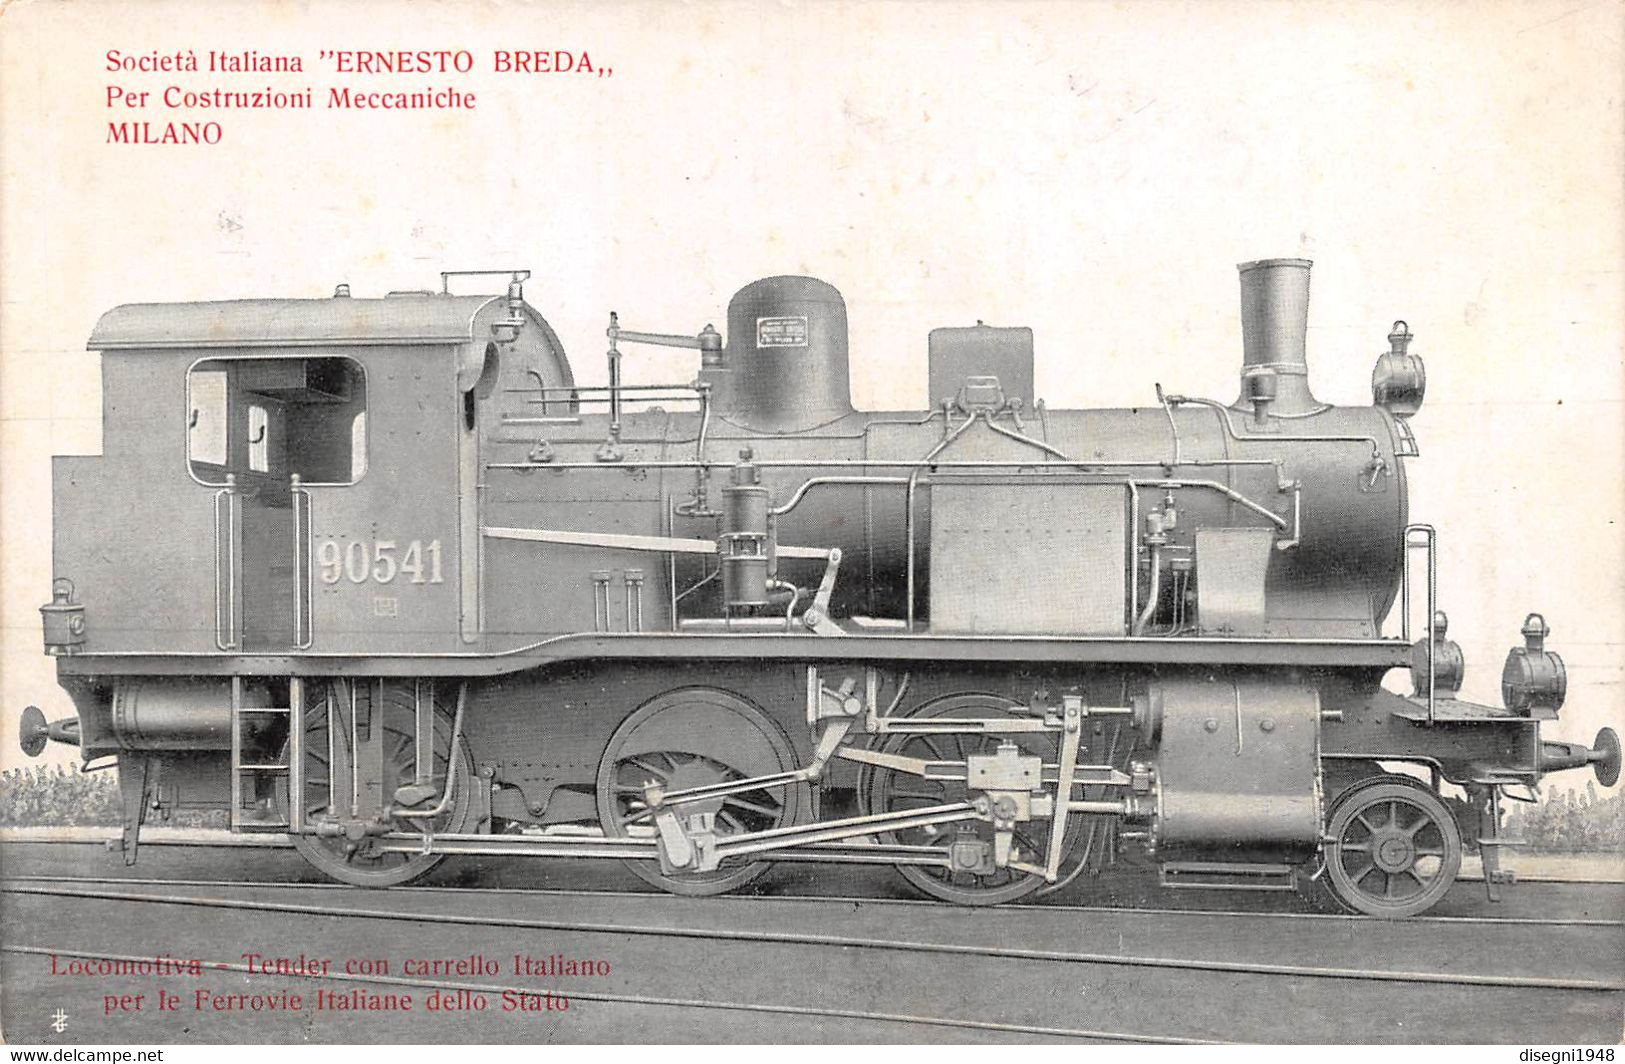 09878 "LOCOMOTIVA TENDER CON CARRELLO ITALIANO (90541) - SOCIETA' ITALIANA ERNESTO BREDA - MILANO" CART. ORIG. NON SPED. - Trains